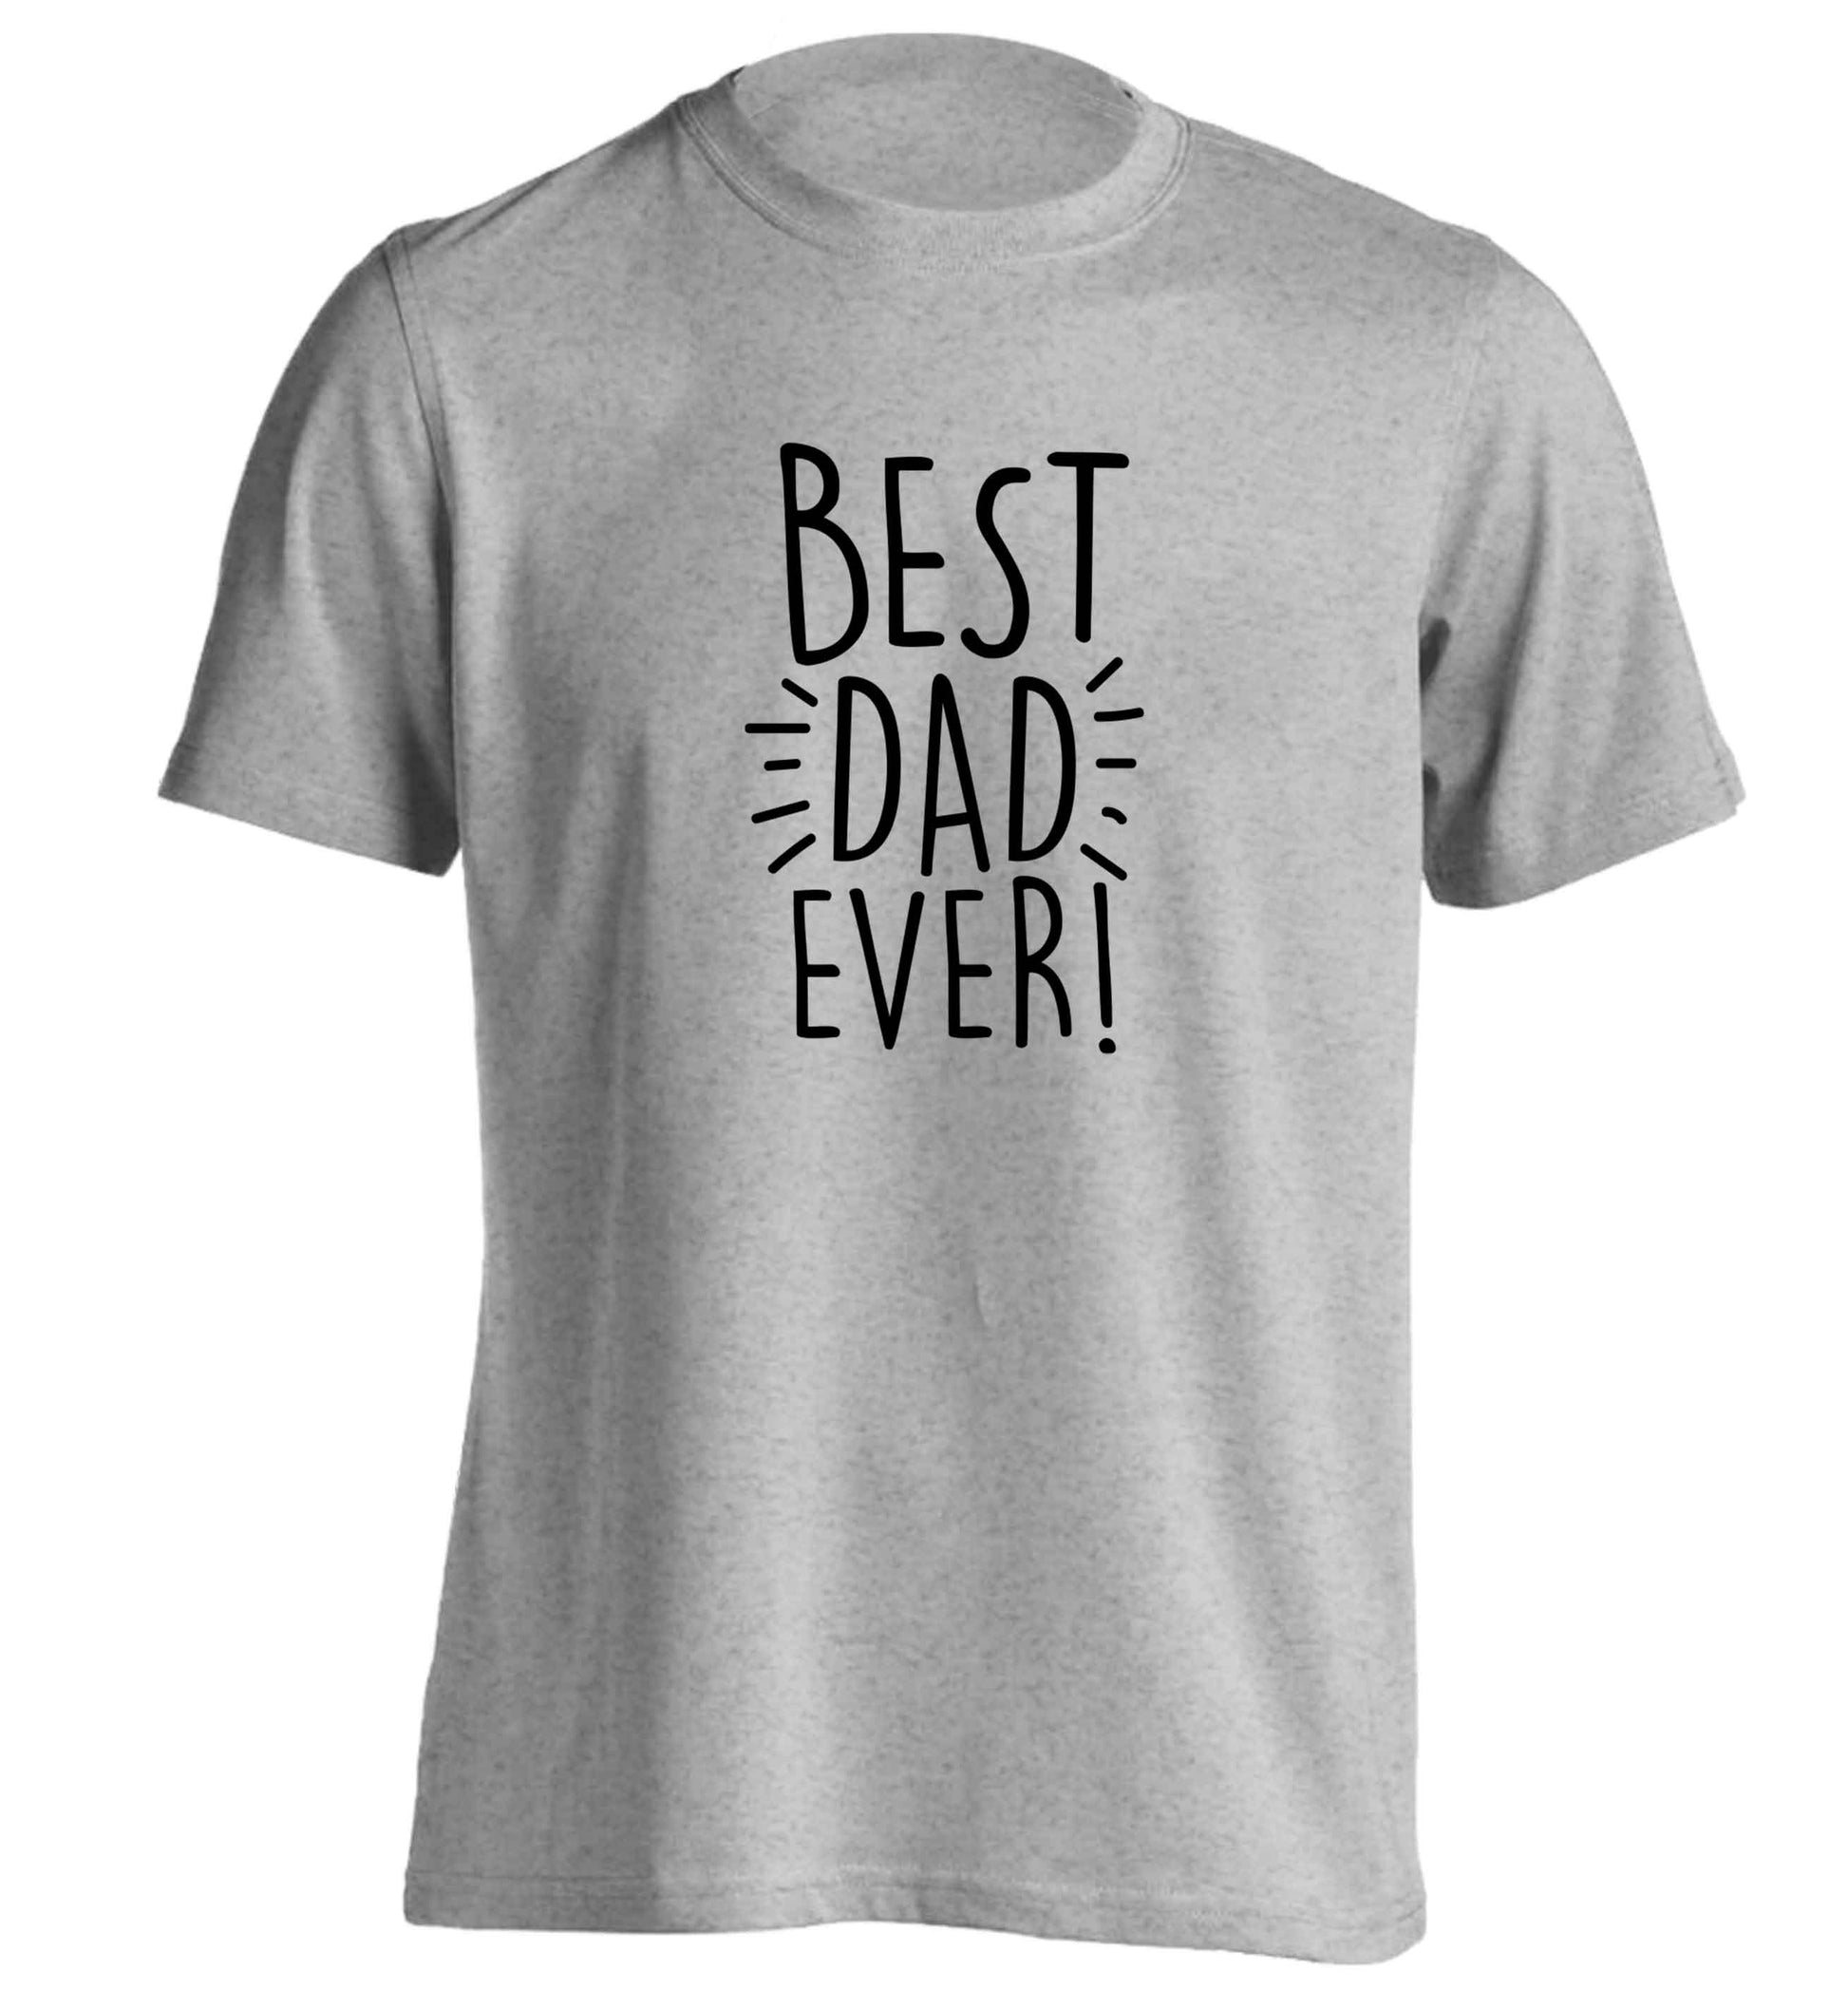 Best dad ever! adults unisex grey Tshirt 2XL